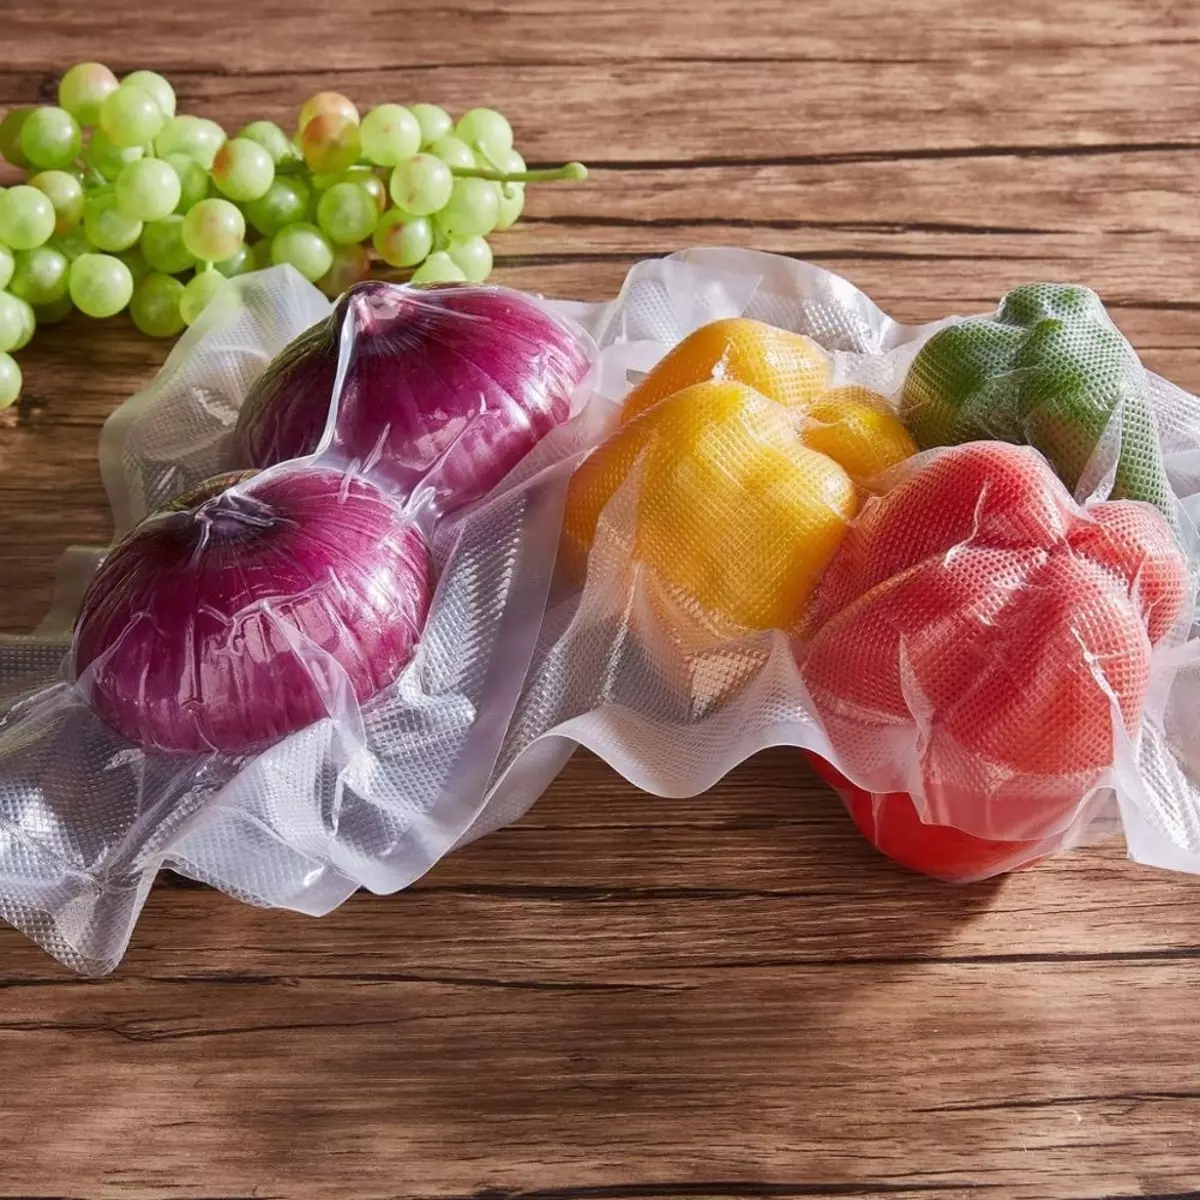 Envases de baleiro de verduras (27 fotos): remolacha e outros verduras peladas e cortadas, cocidas e frescas, vida útil e de almacenamento 21507_3